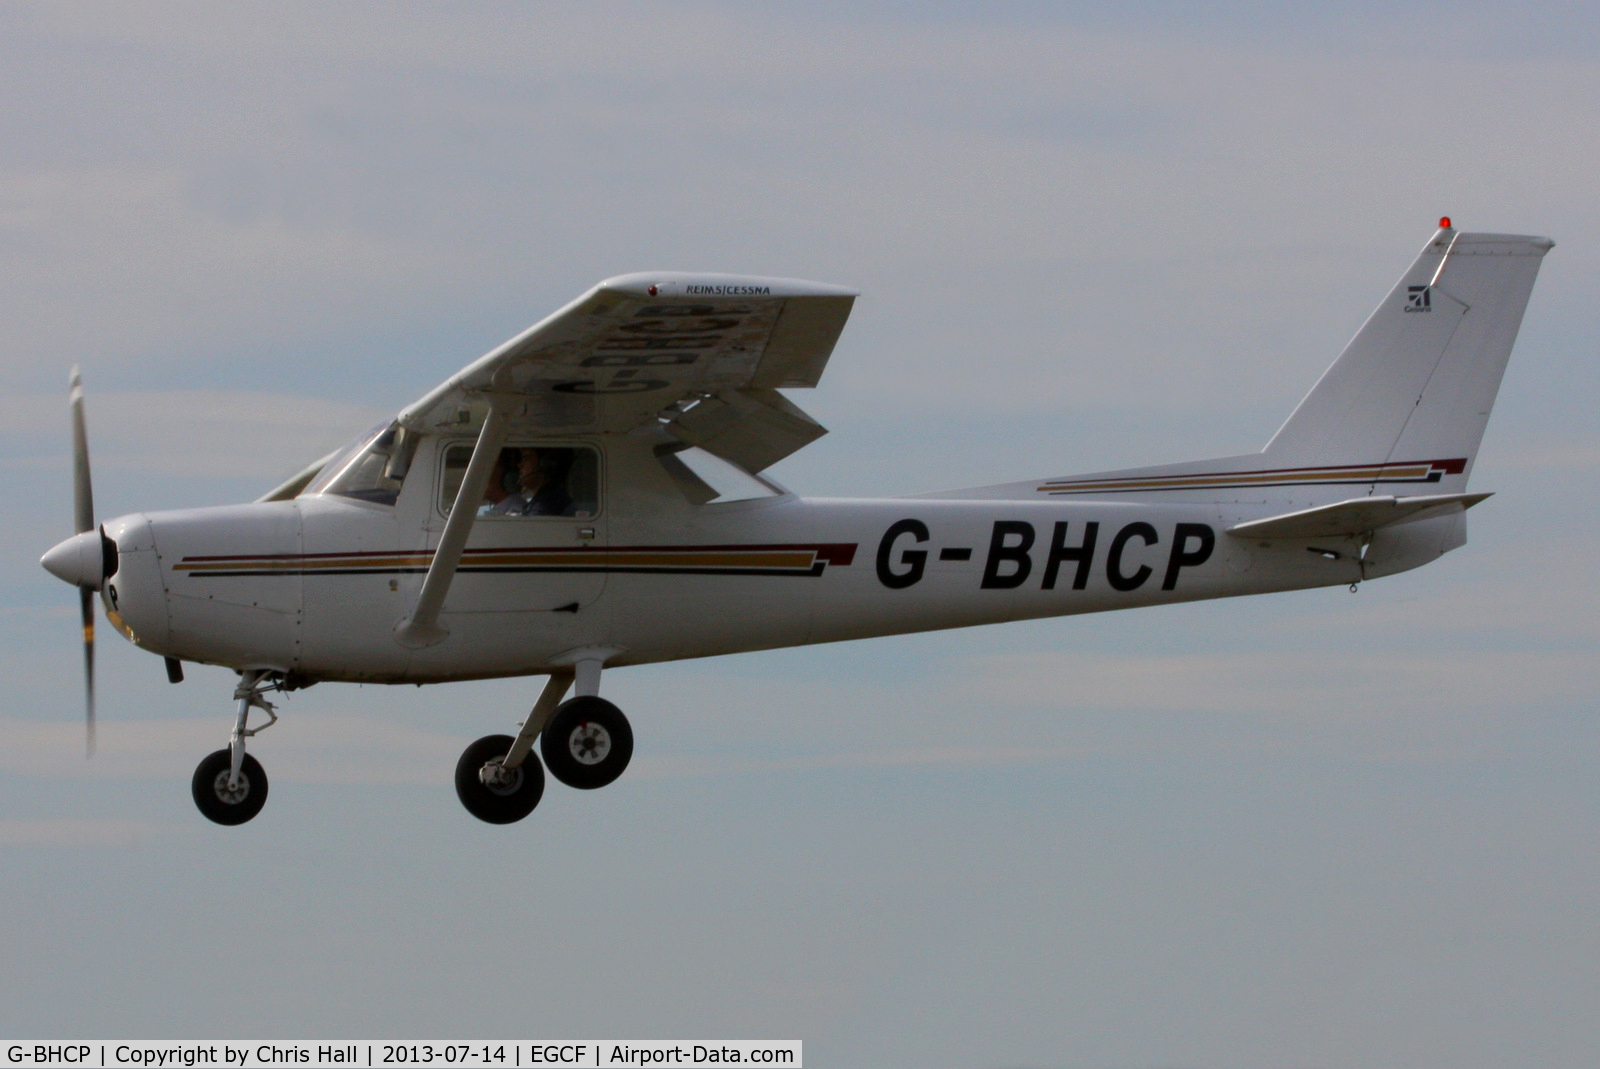 G-BHCP, 1979 Reims F152 C/N 1640, Eastern Air Exucutive Ltd